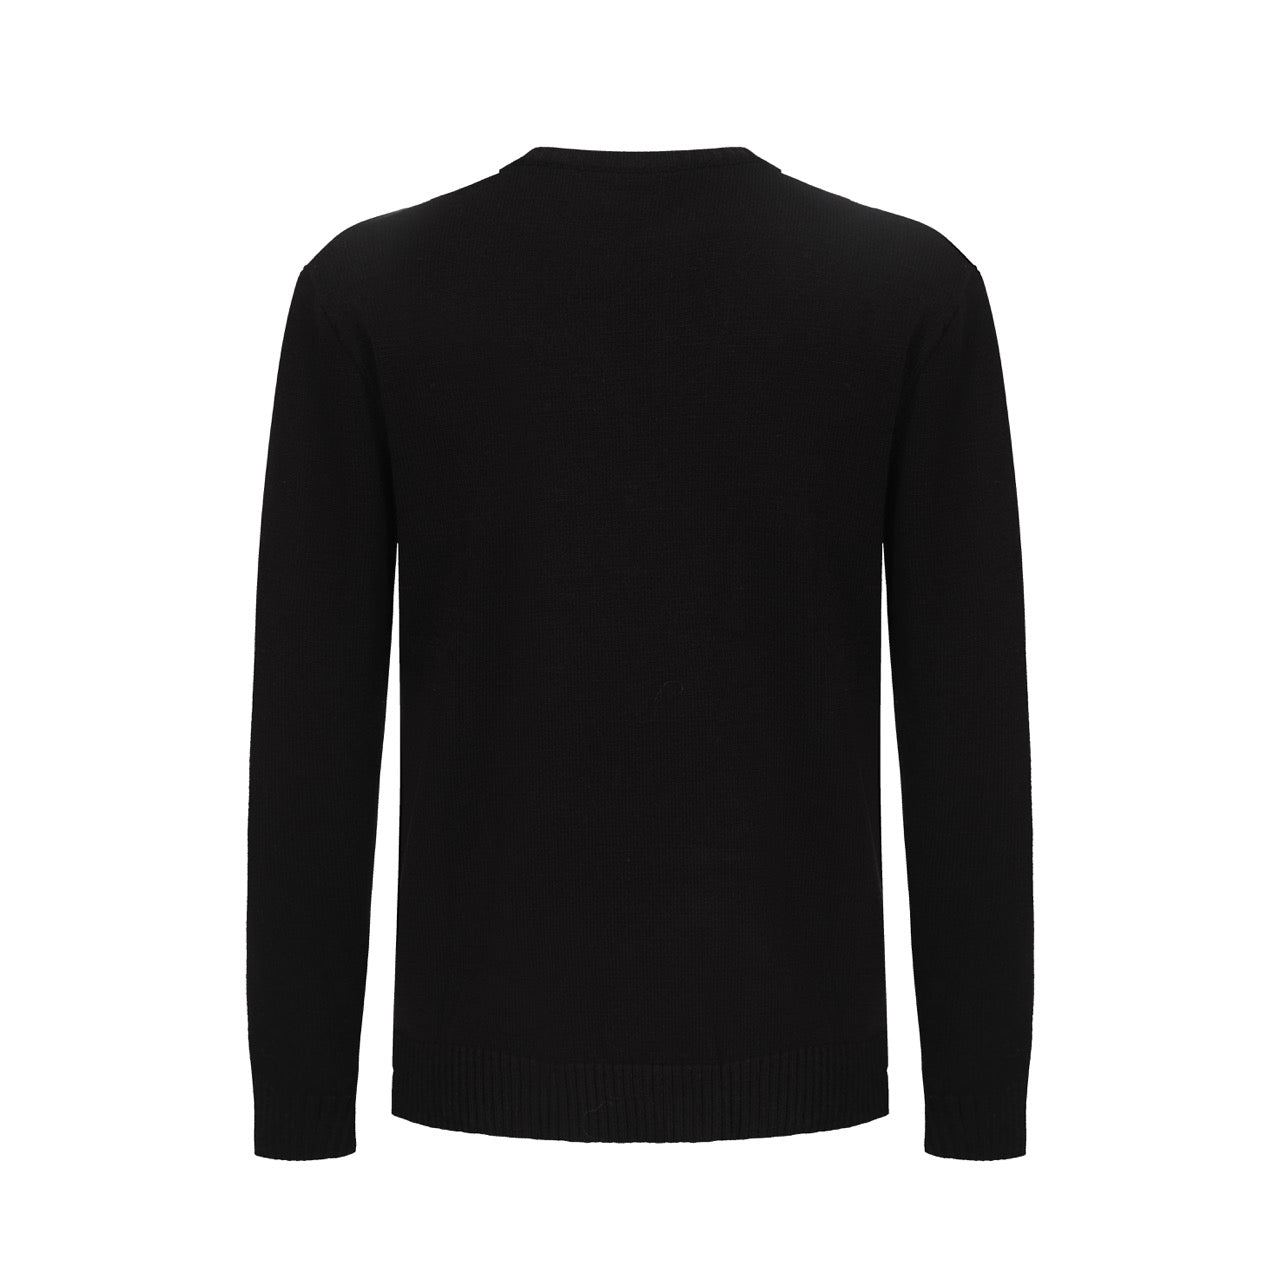 Μαύρο πουλόβερ με μακρυμάνικο στάμπα ουράνιο τόξο